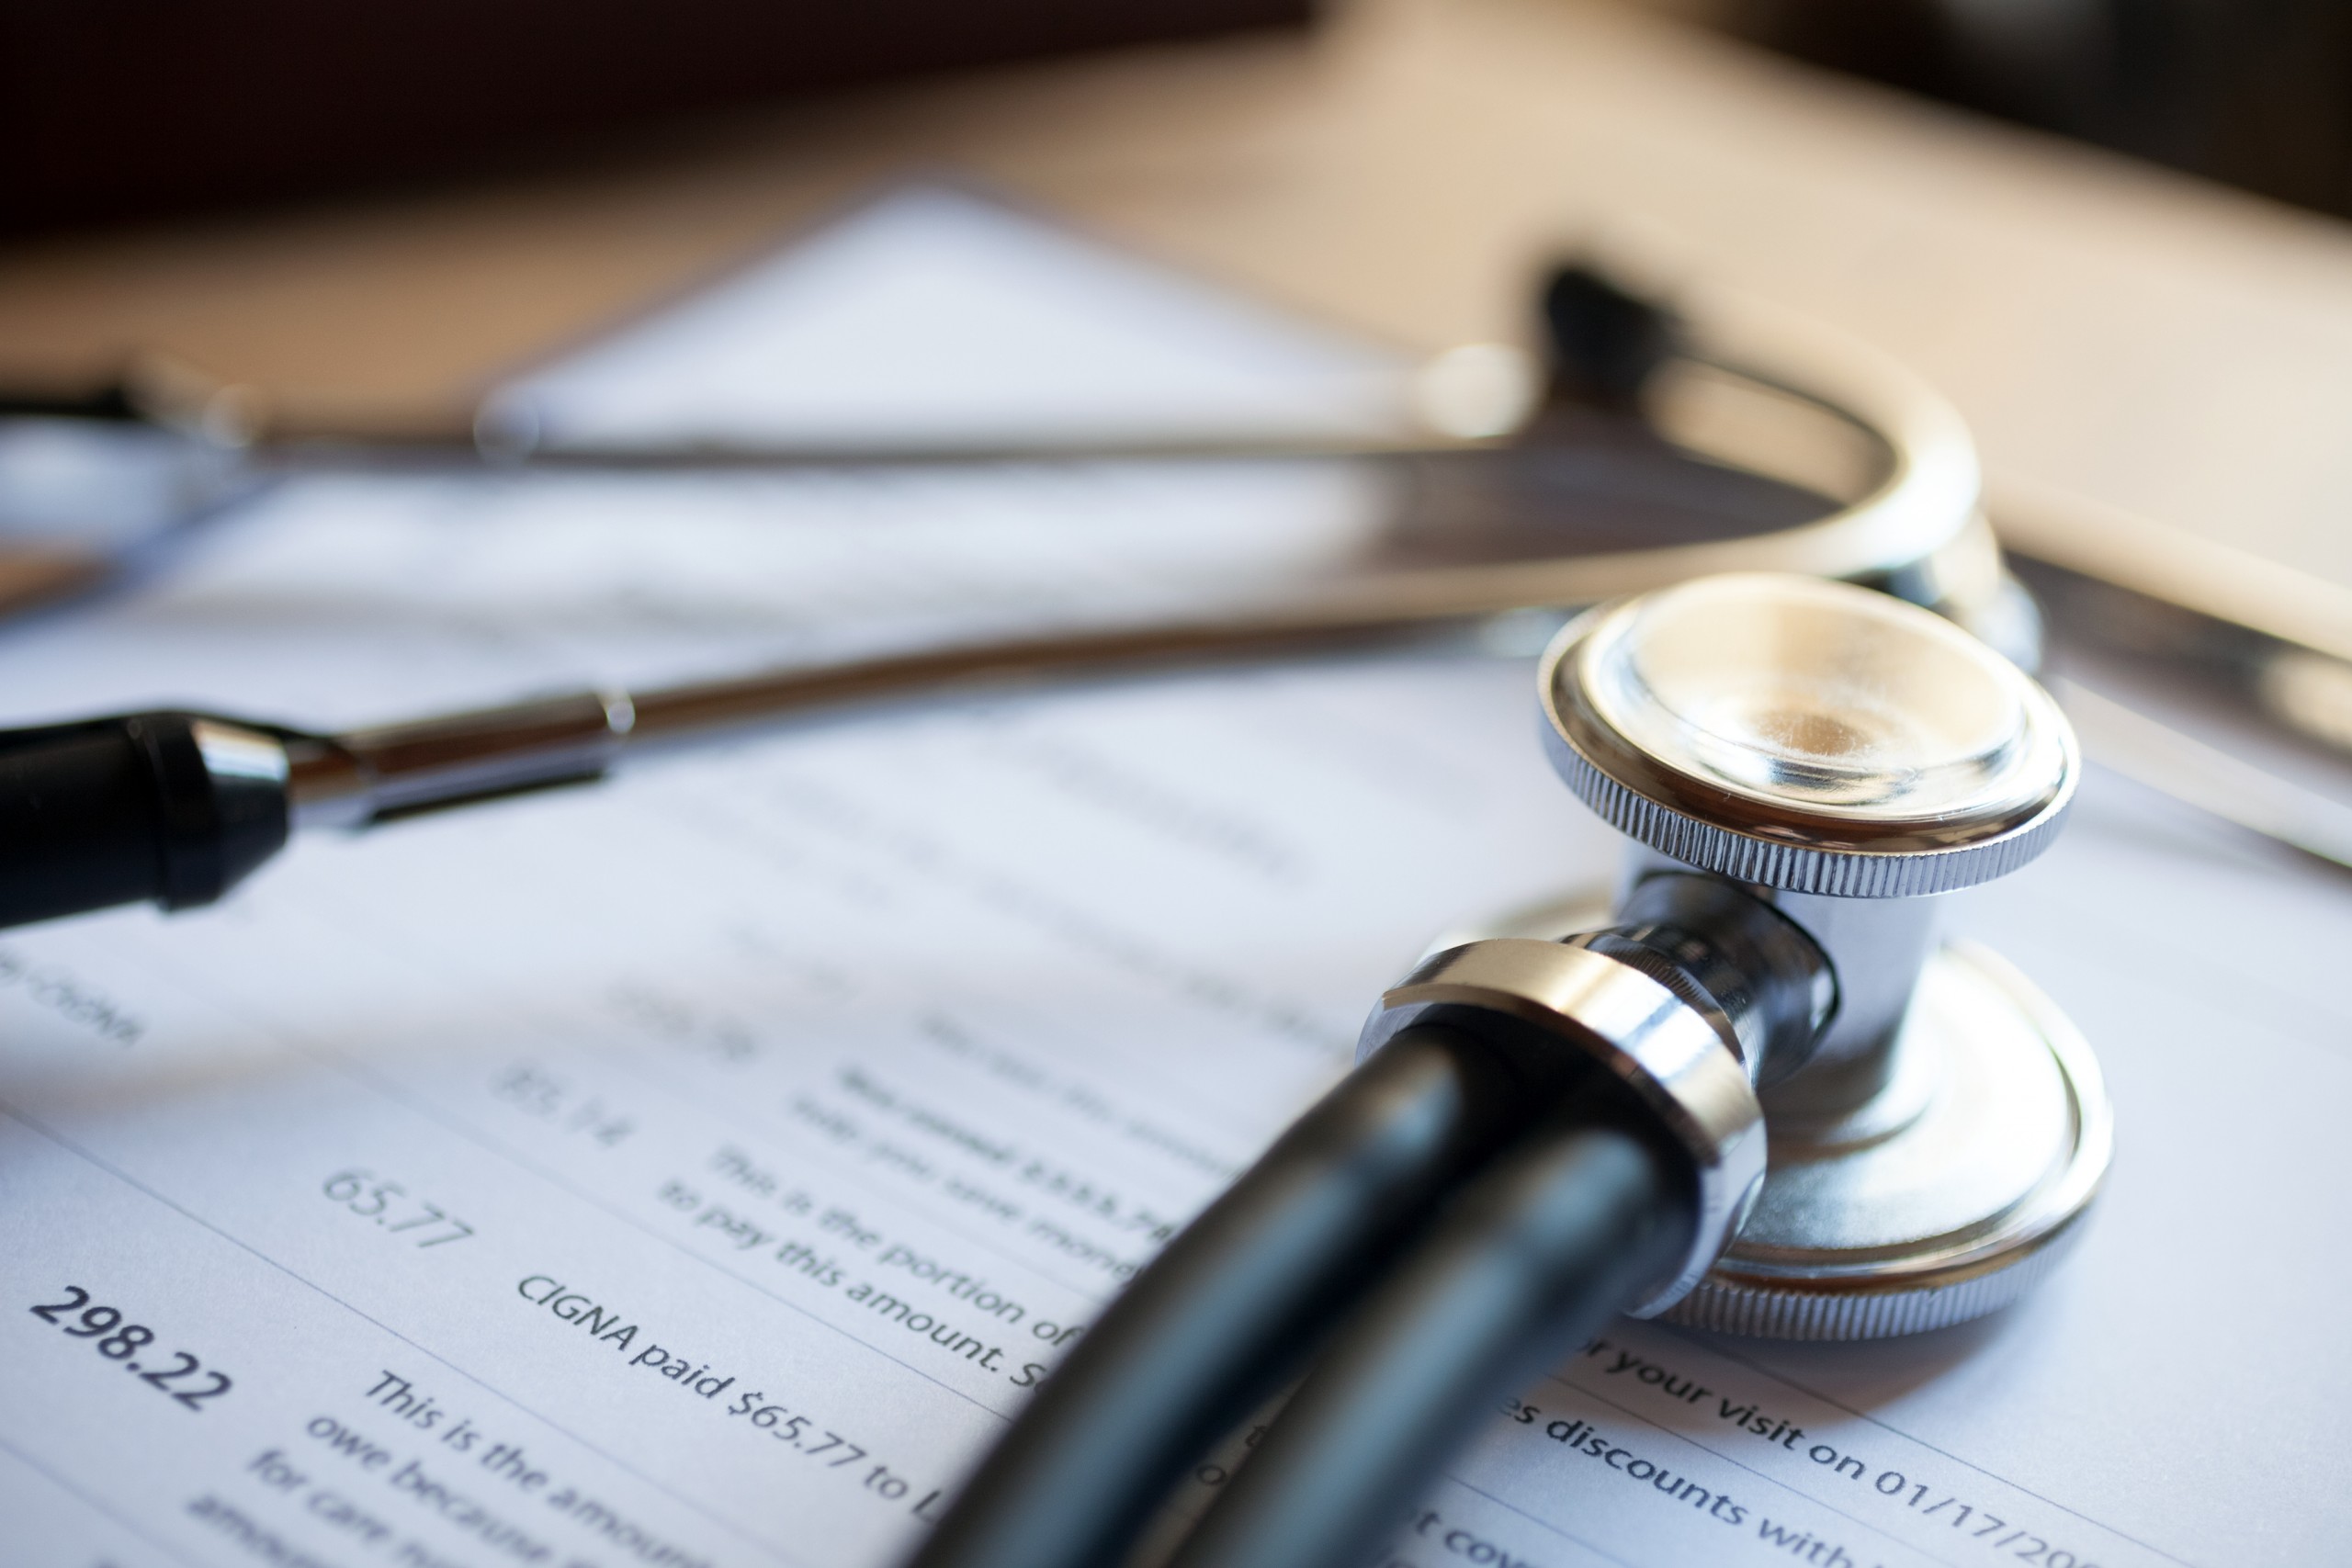 Insurance reimbursement paperwork on a clipboard under a stethoscope.